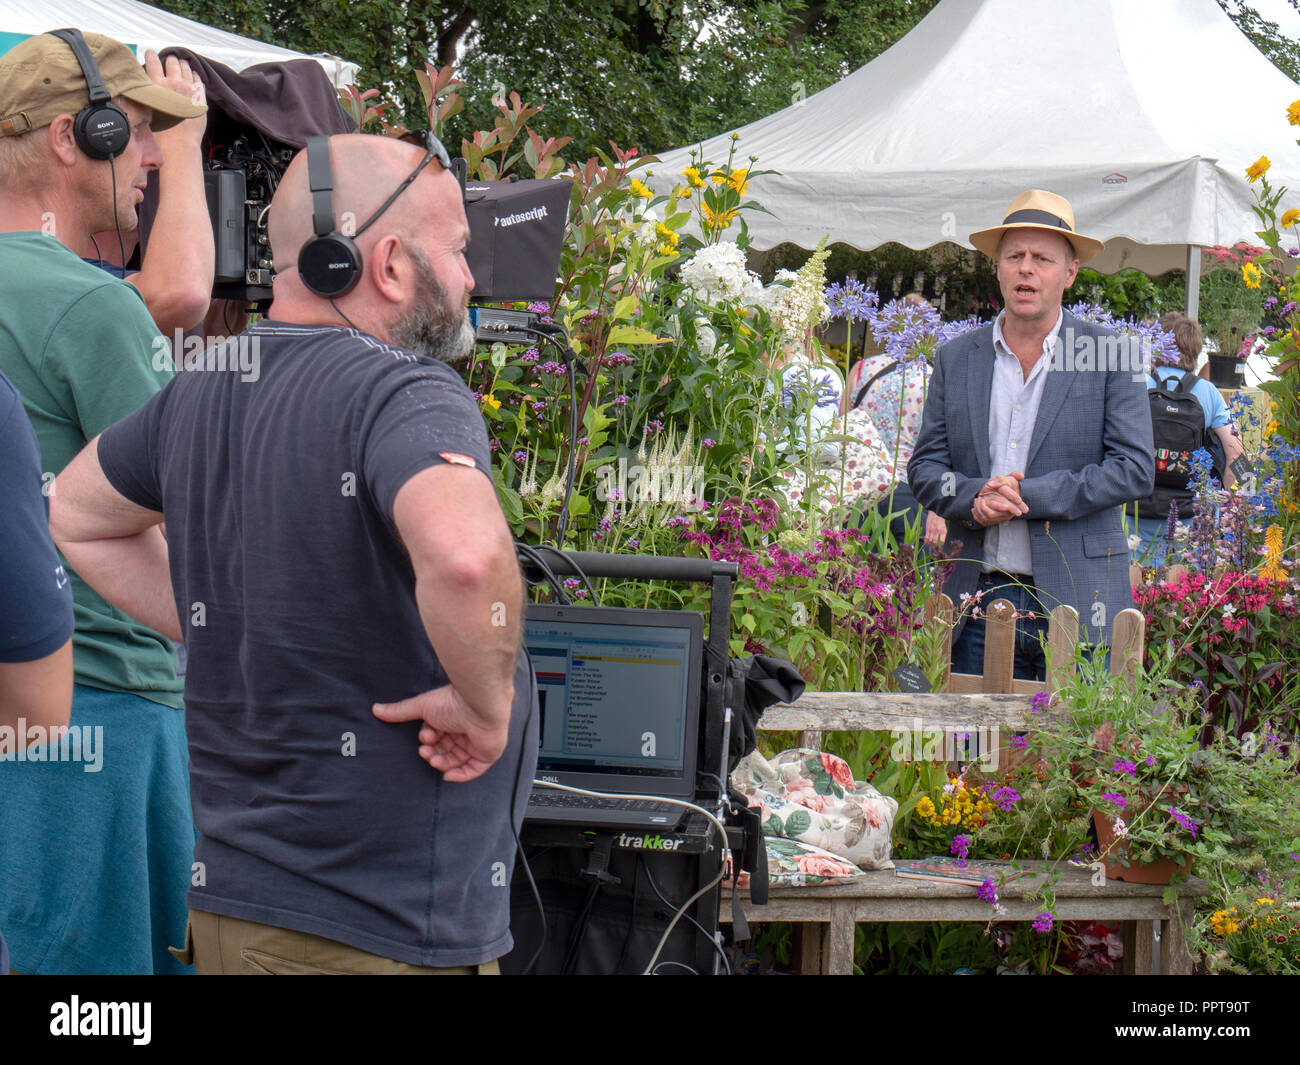 Présentatrice TV et jardin designer, Jo, l'enregistrement rapide à l'appareil photo pour une émission de télévision à Tatton Park RHS Flower show. Banque D'Images